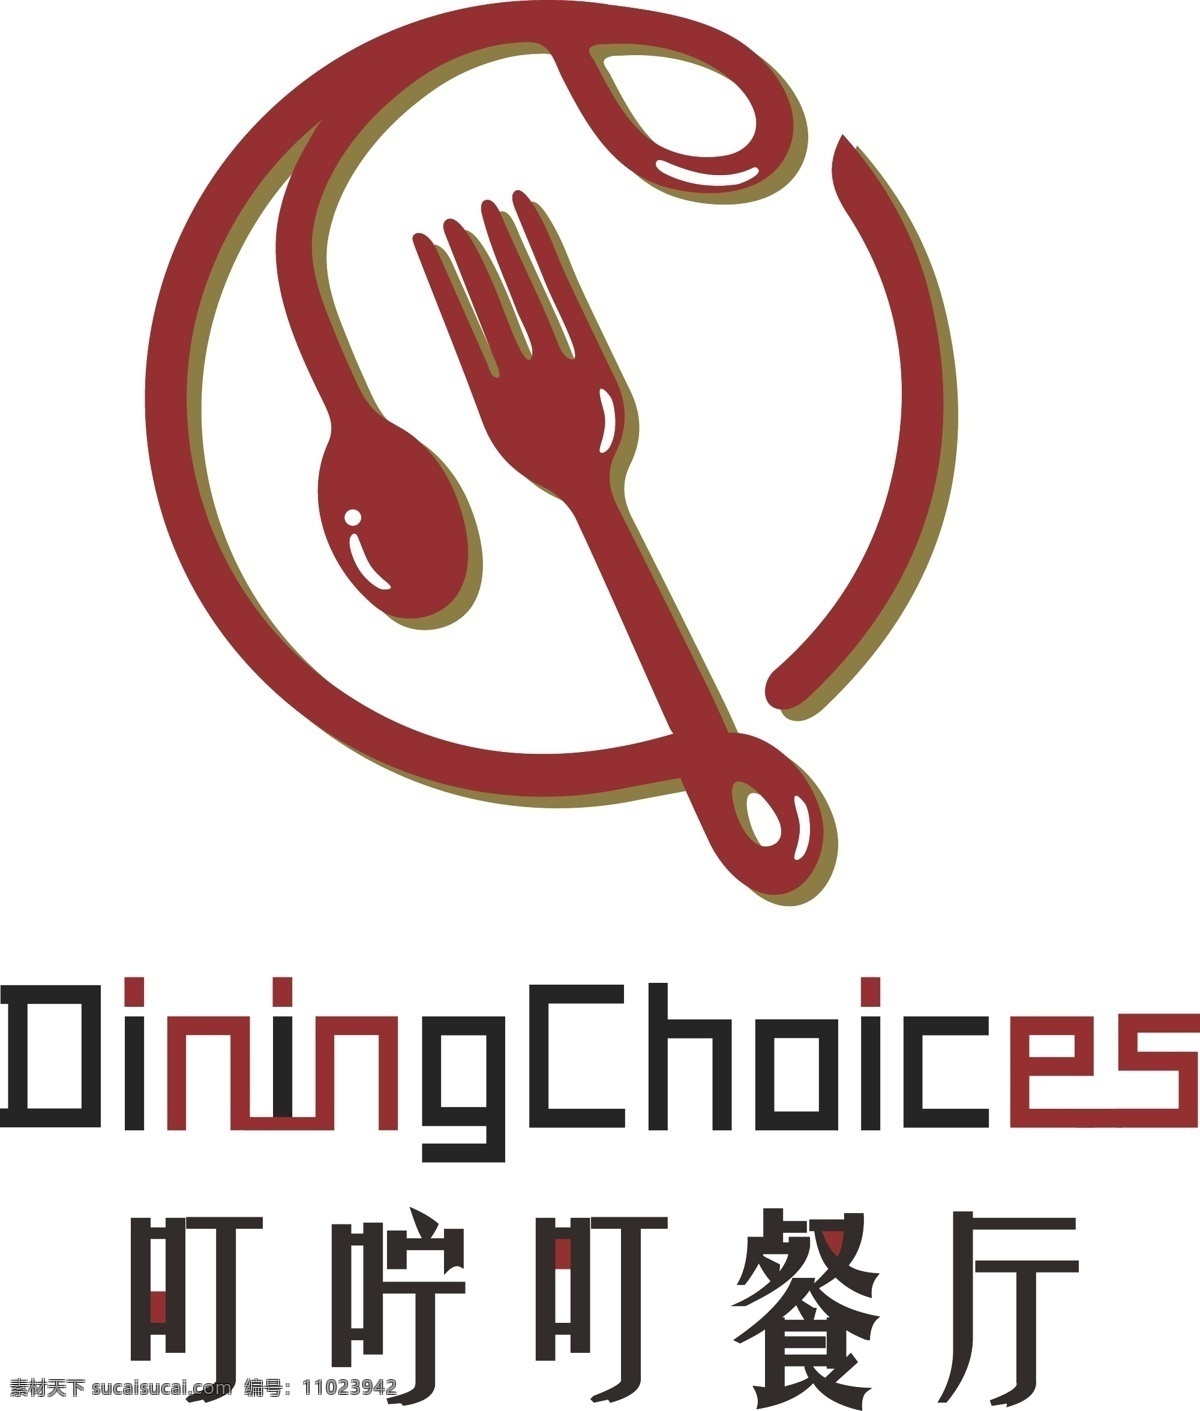 原创 餐饮 餐厅 logo 红黑 简约 拟物